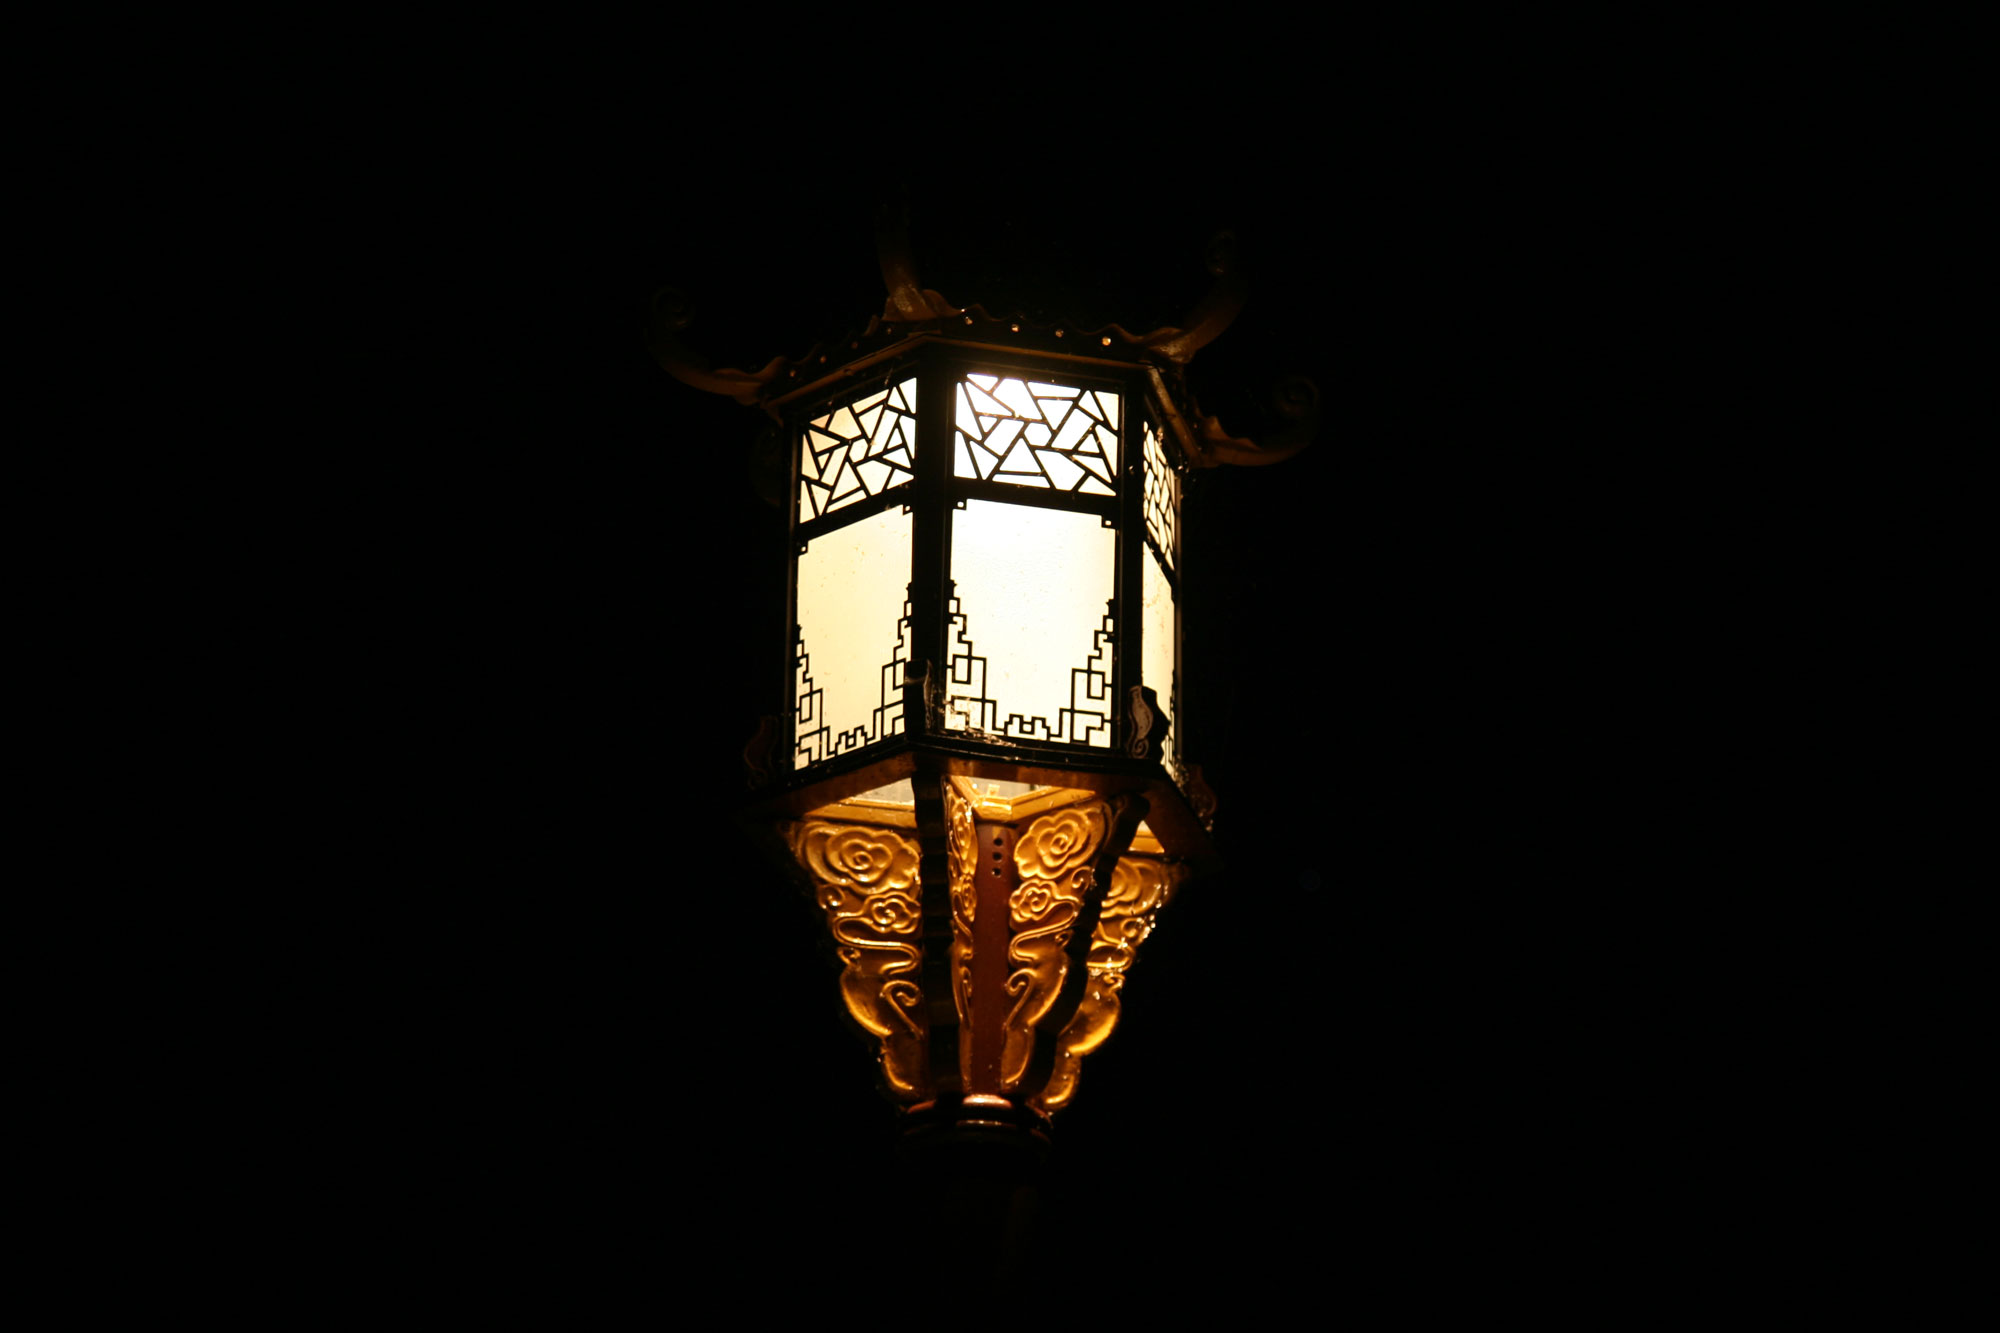 The Outpost lantern